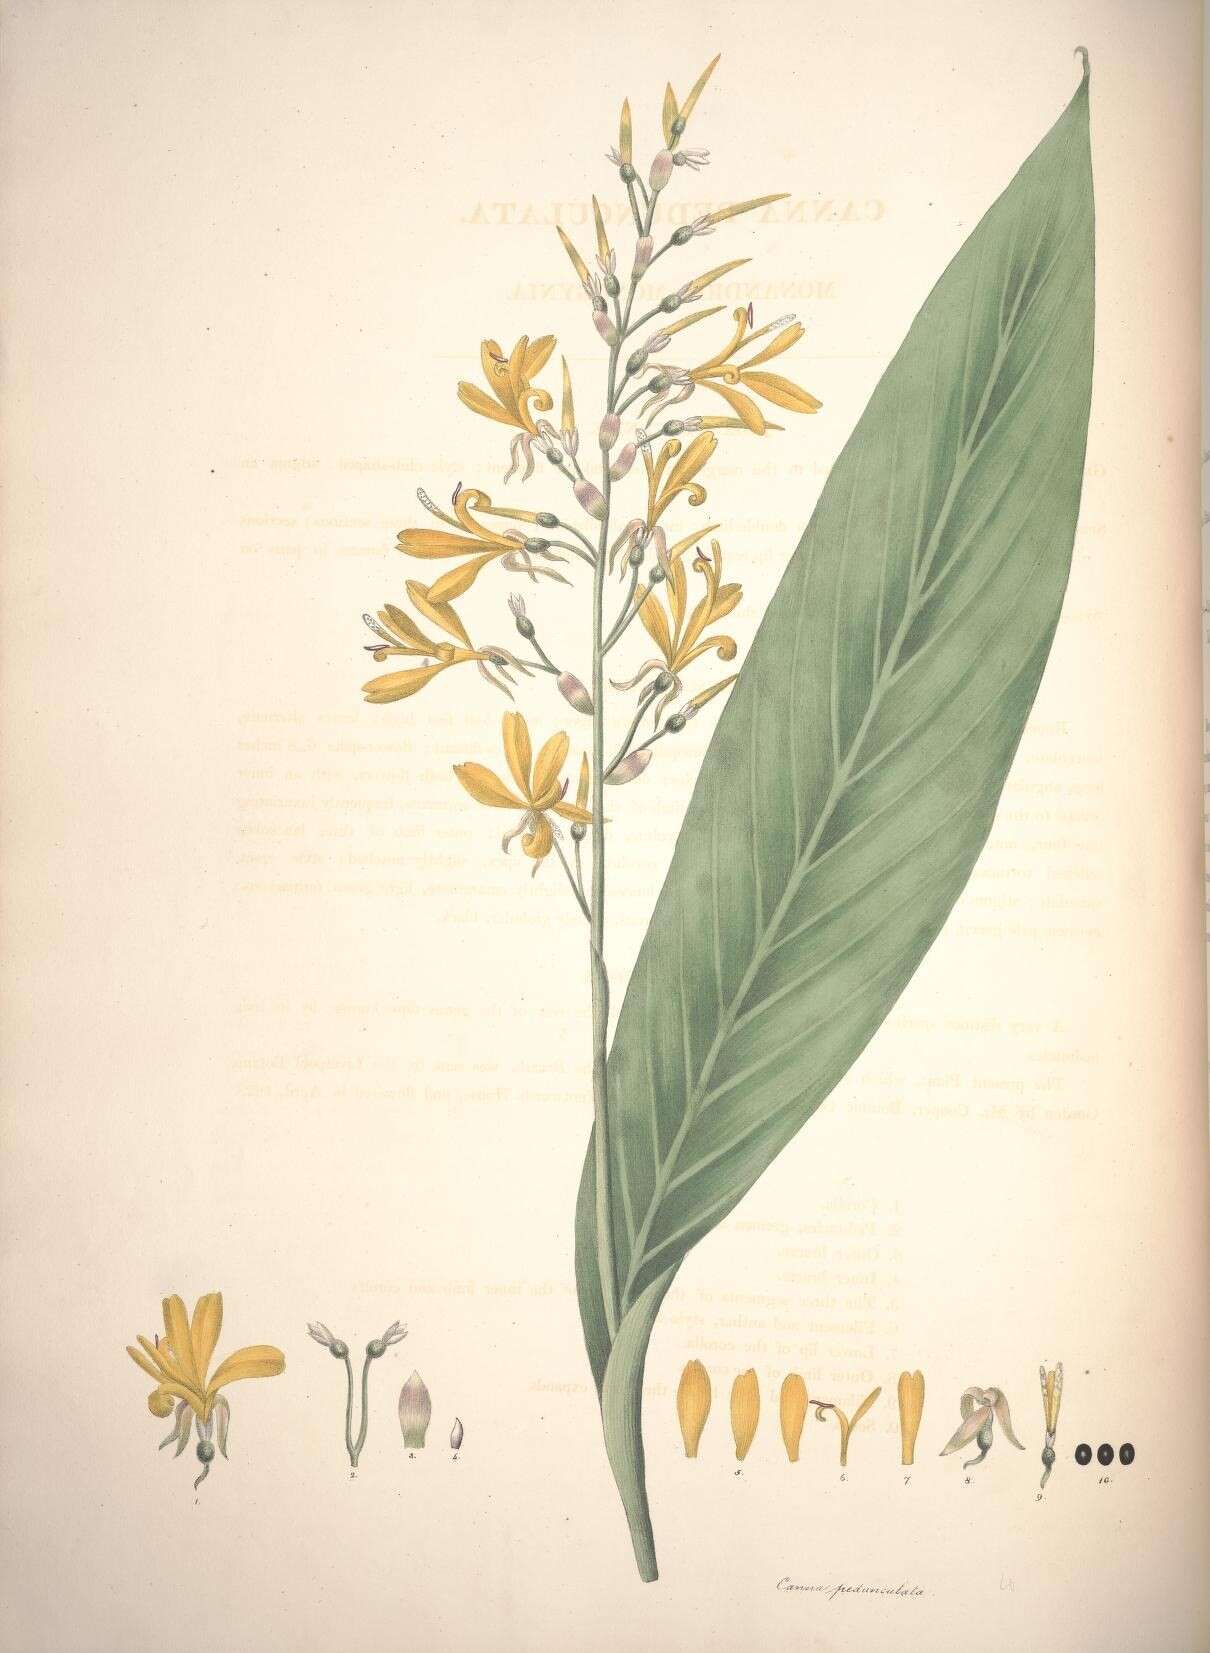 Image of Canna pedunculata Sims